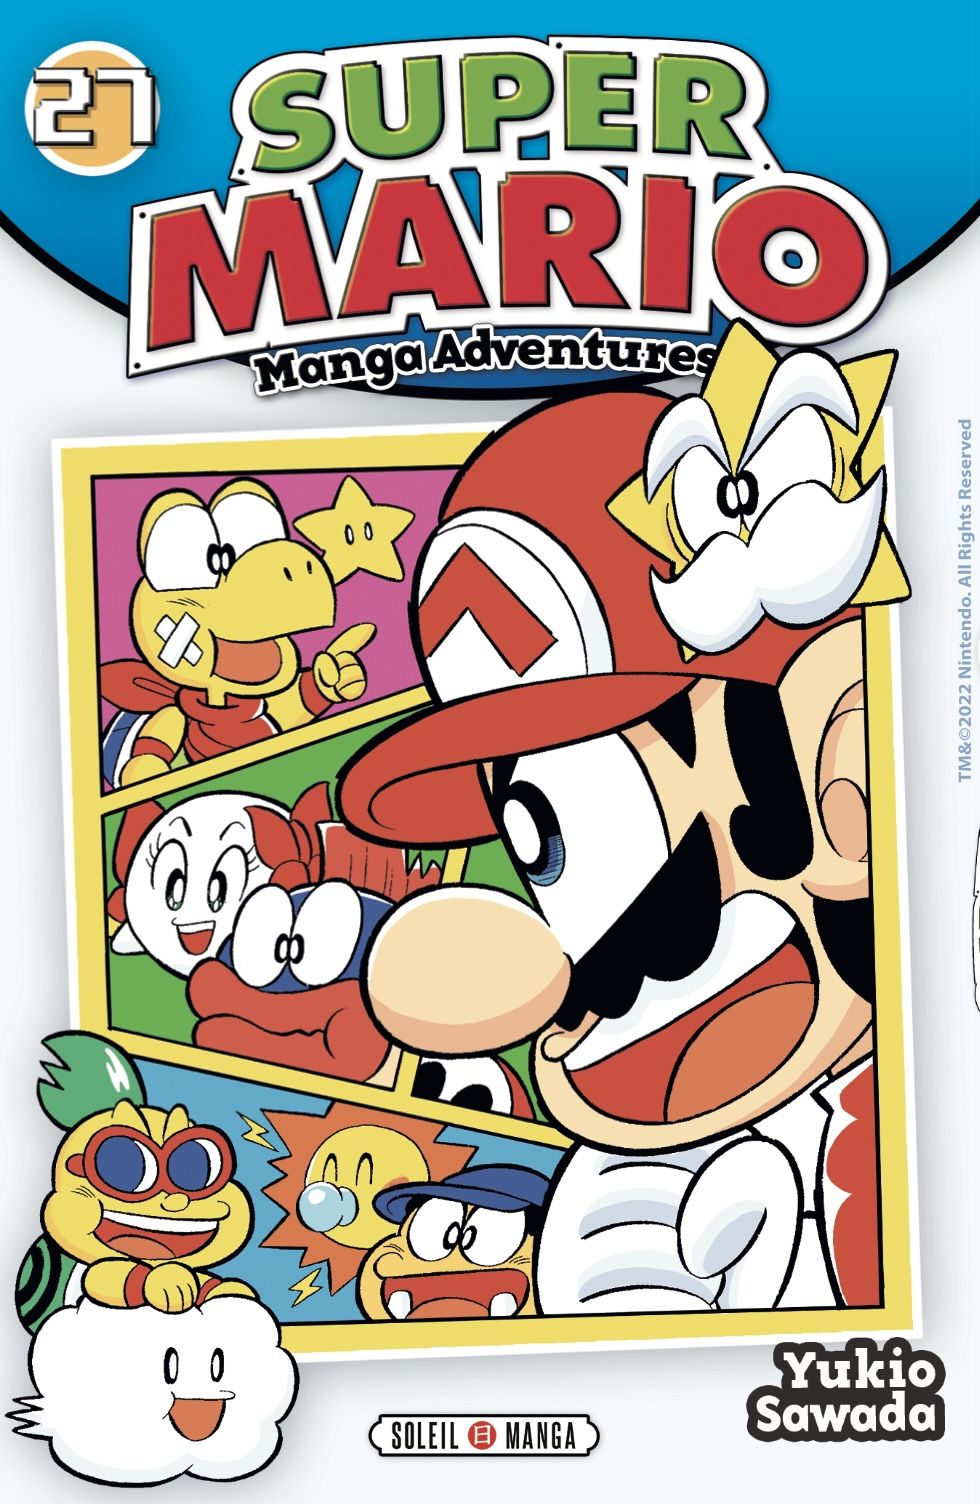 Super Mario - Manga adventures Vol.27